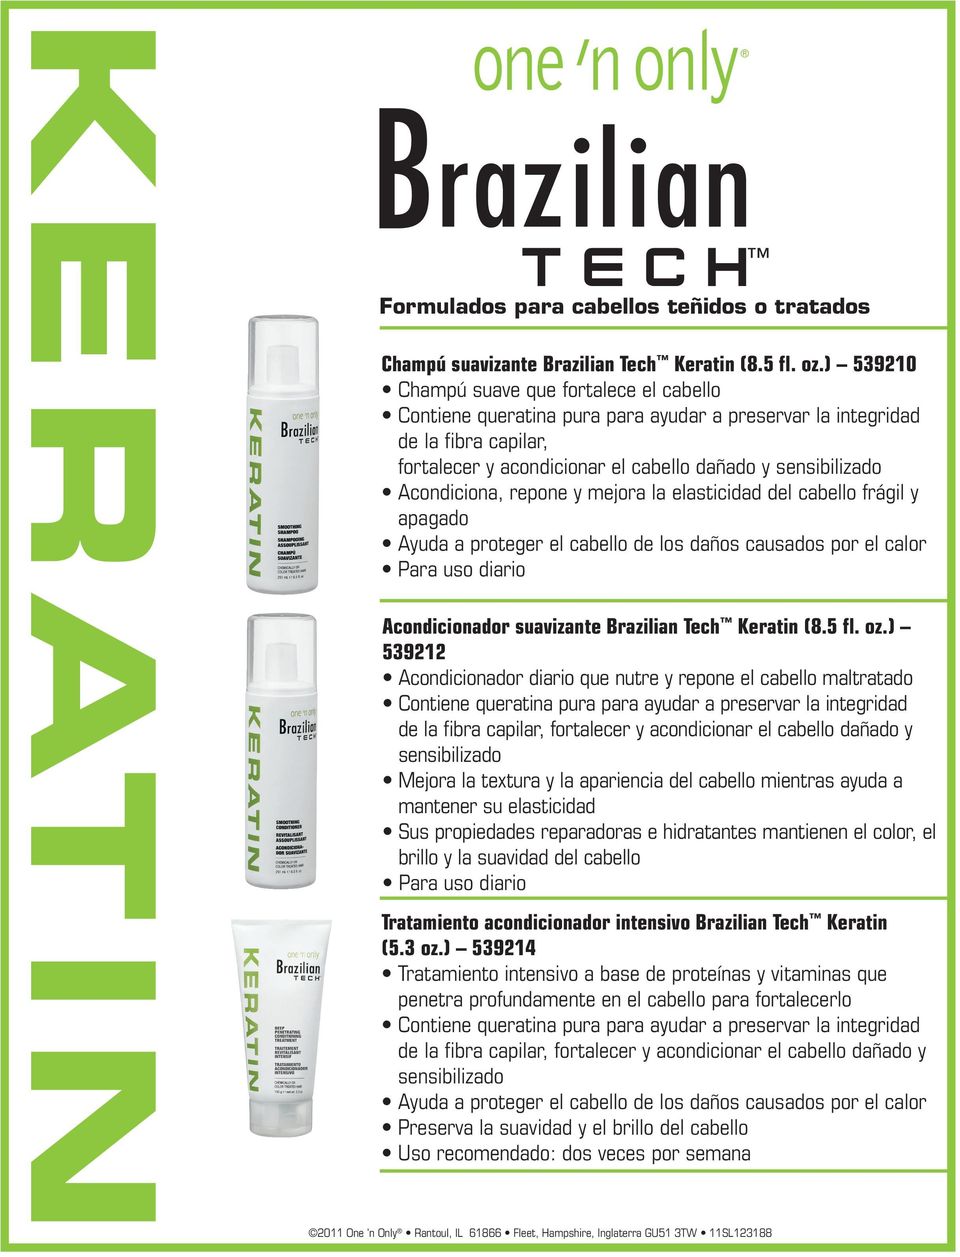 proteger el cabello de los daños causados por el calor Para uso diario Acondicionador suavizante Brazilian Tech Keratin (8.5 fl. oz.